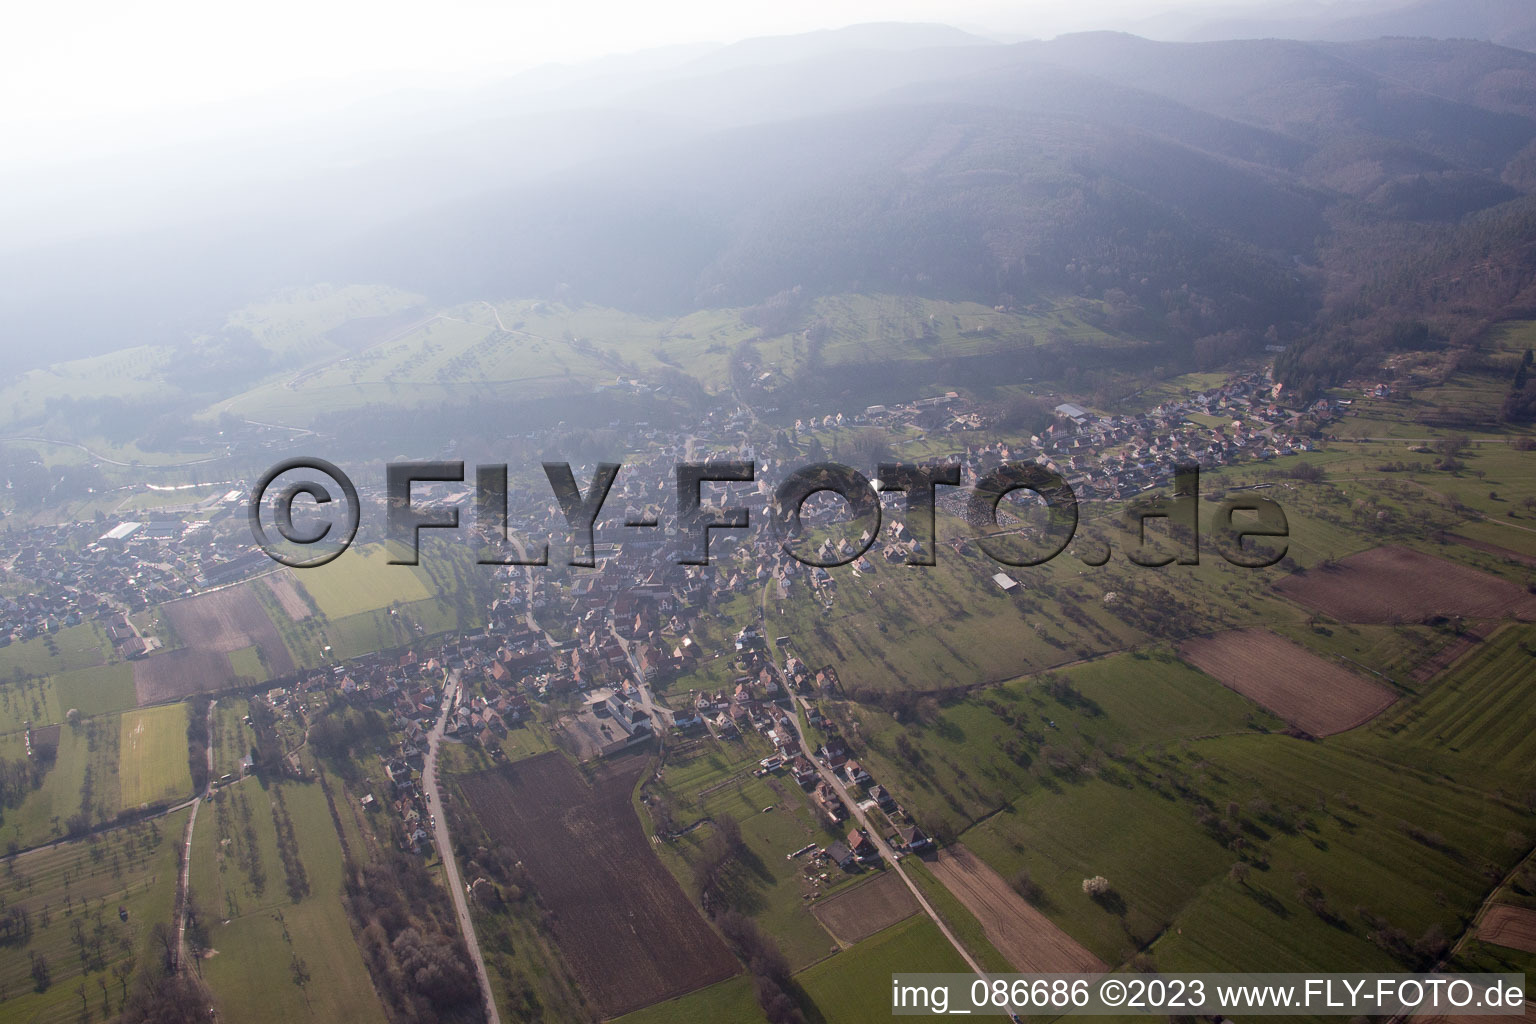 Lembach im Bundesland Bas-Rhin, Frankreich aus der Luft betrachtet